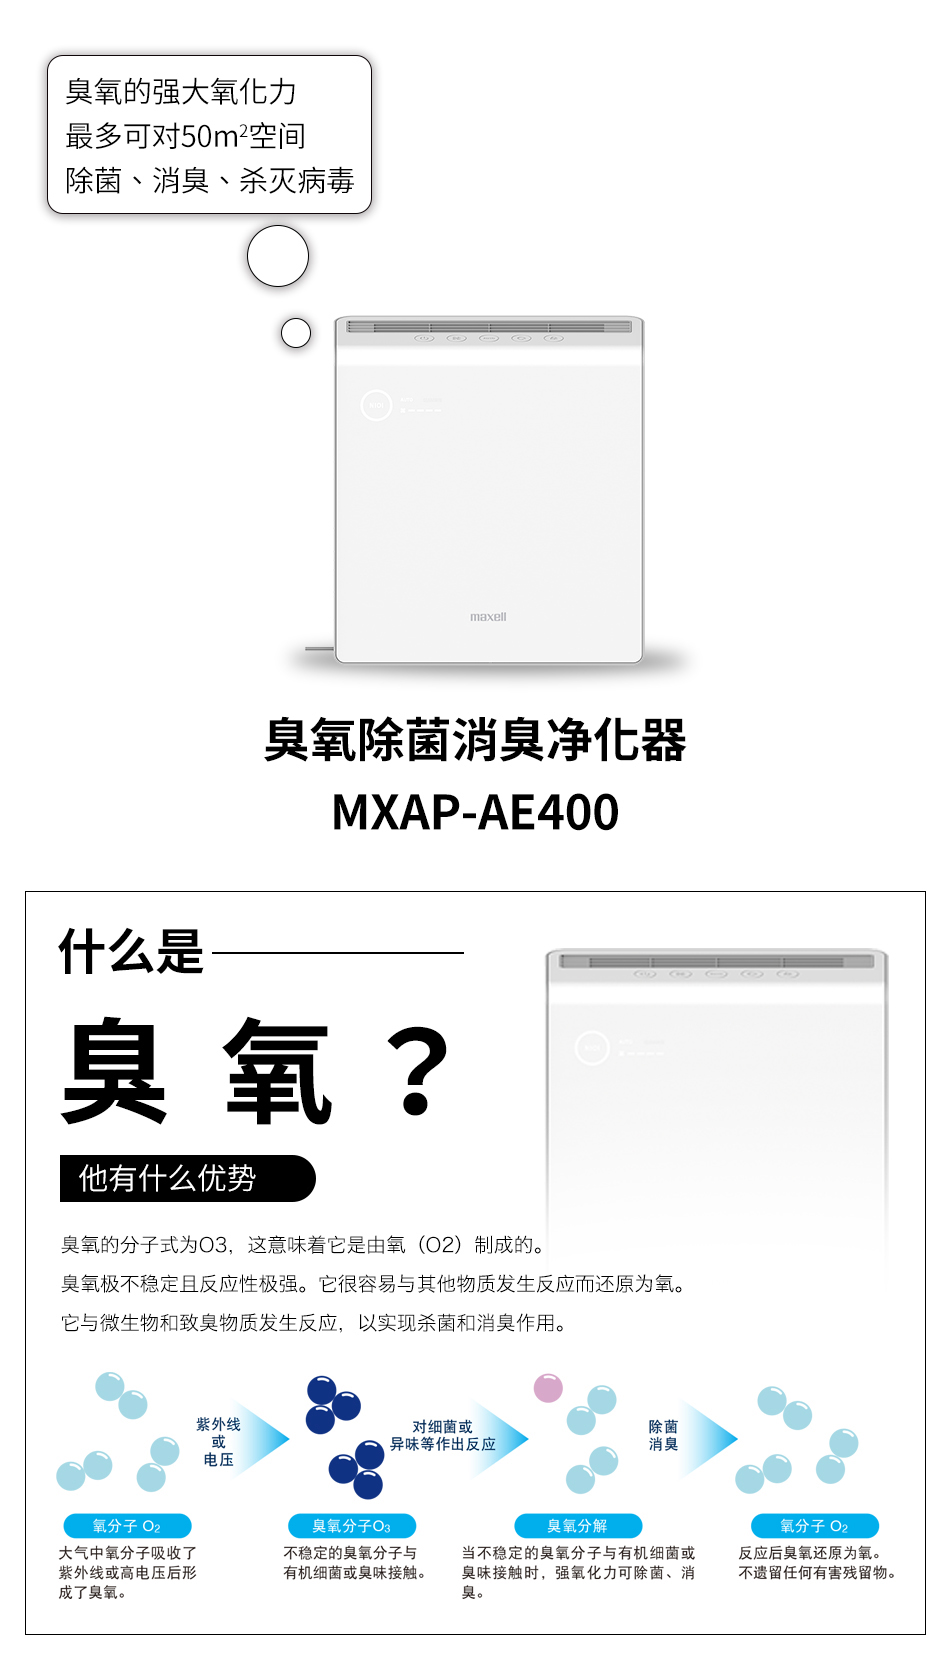 臭氧除菌消臭净化器MXAP-AE400